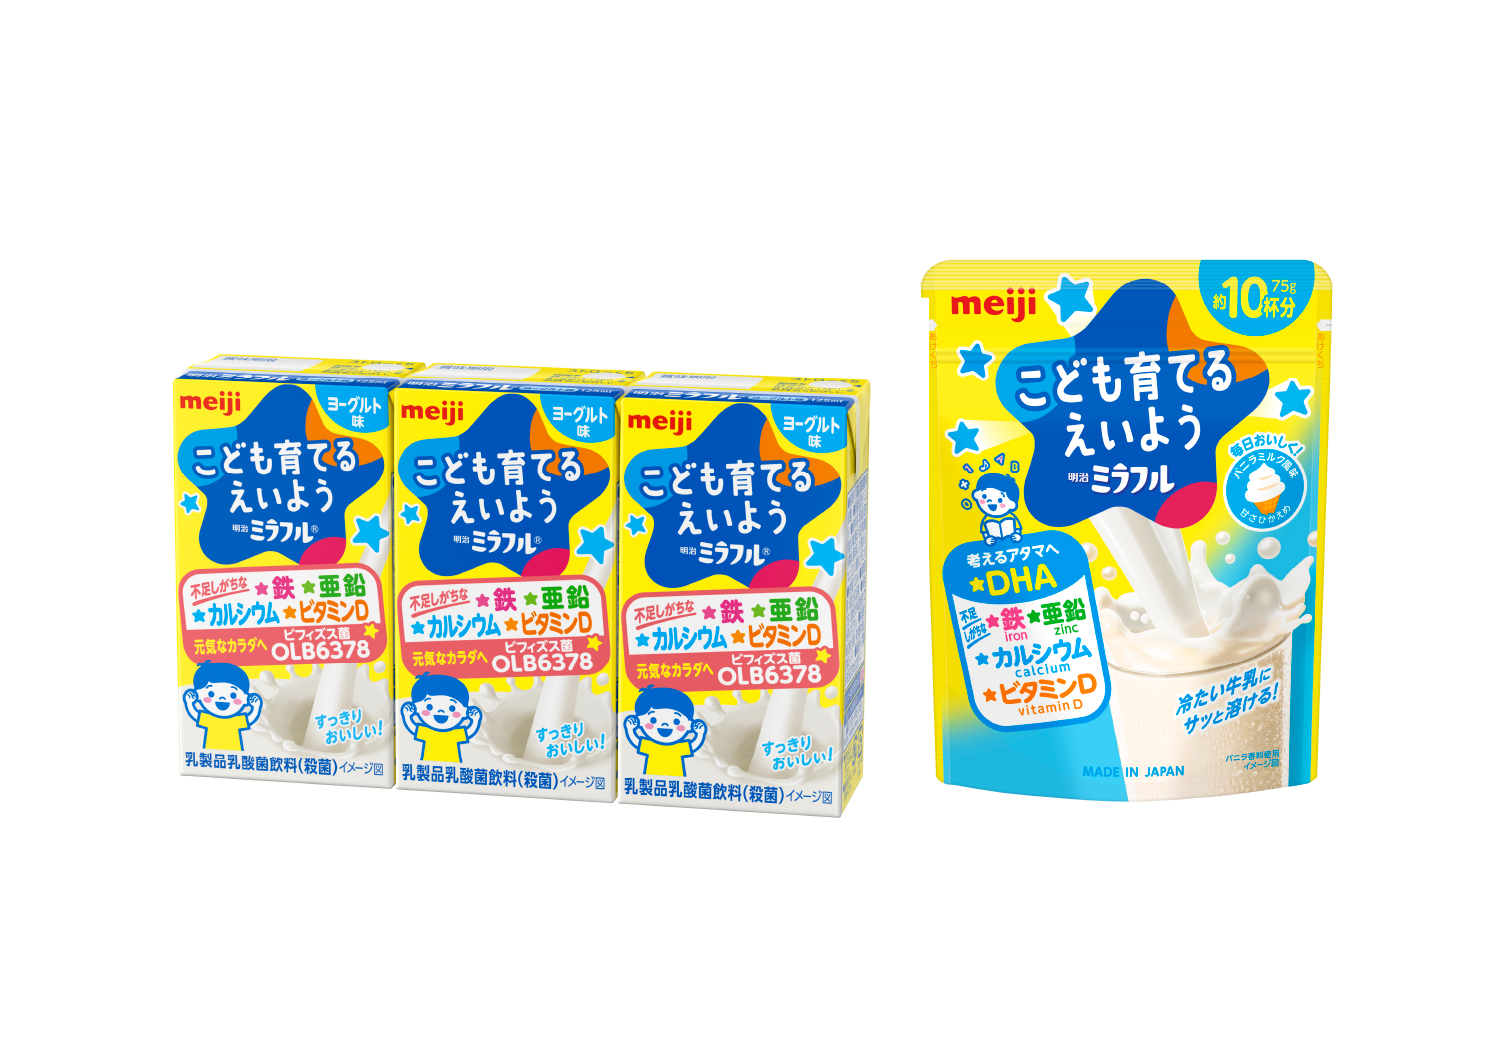 「明治ミラフル」ドリンク3本パック、粉末飲料【特定原材料】乳